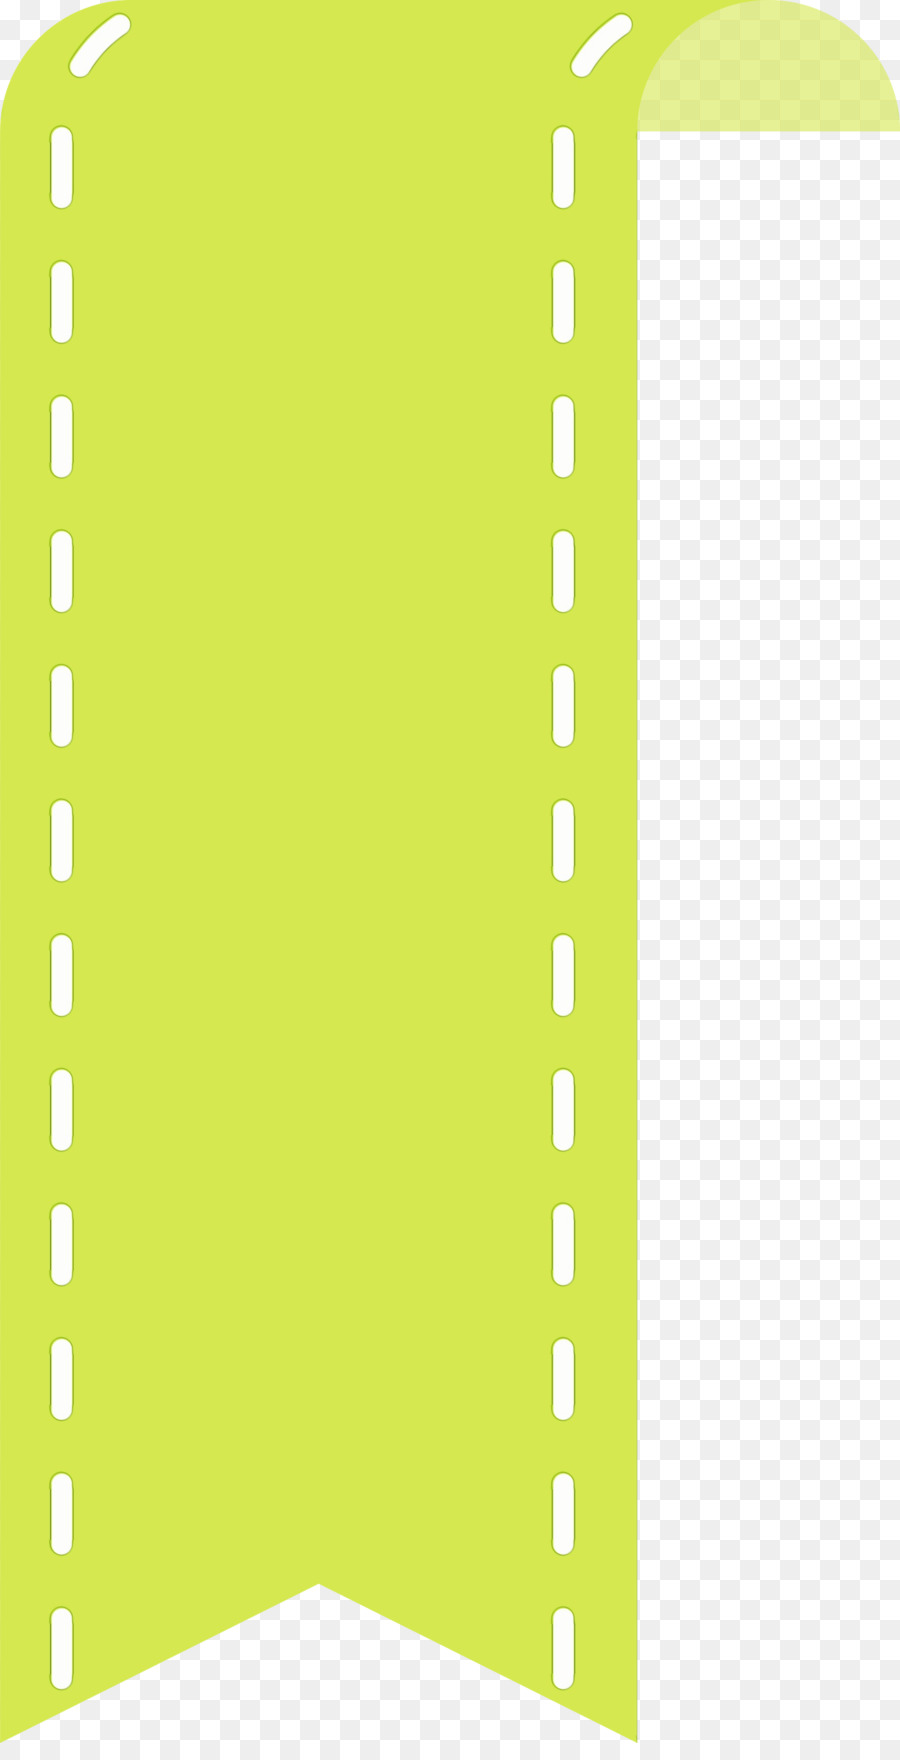 Grün, Gelb, Rechteck - 